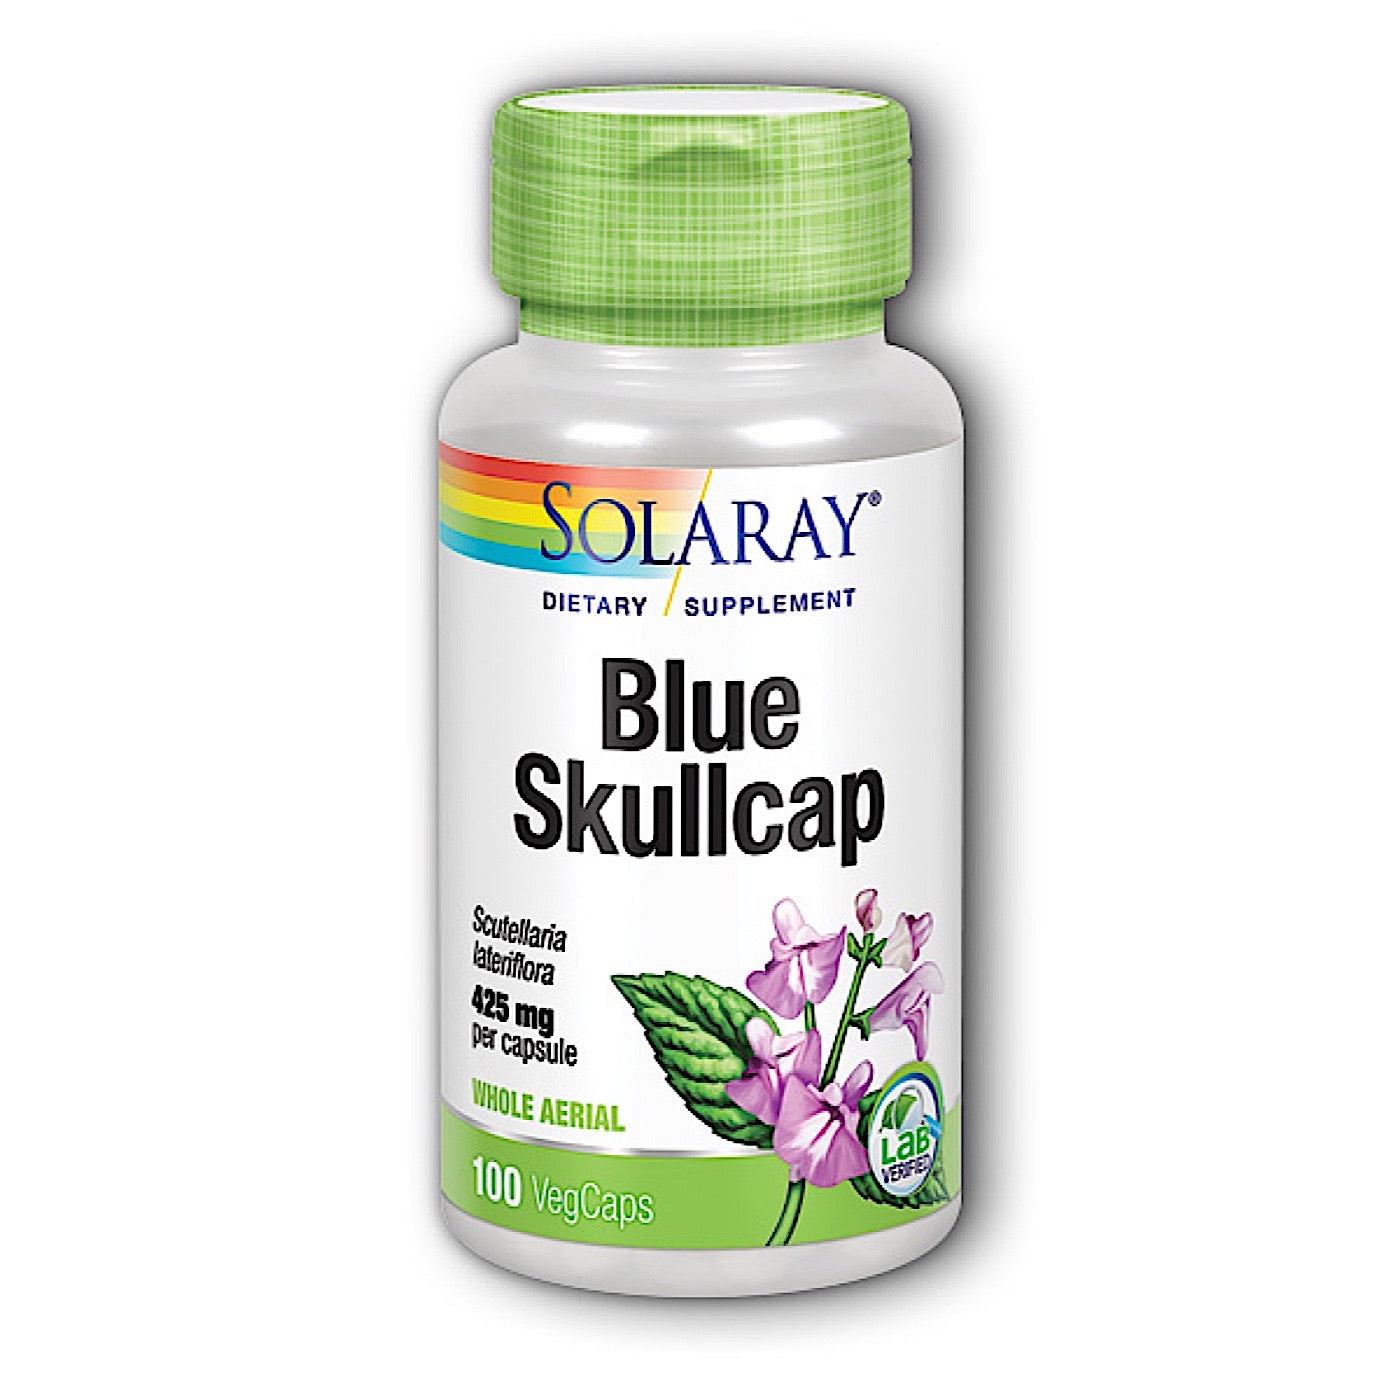 Solaray Blue Skullcap Aerial 425 Mg